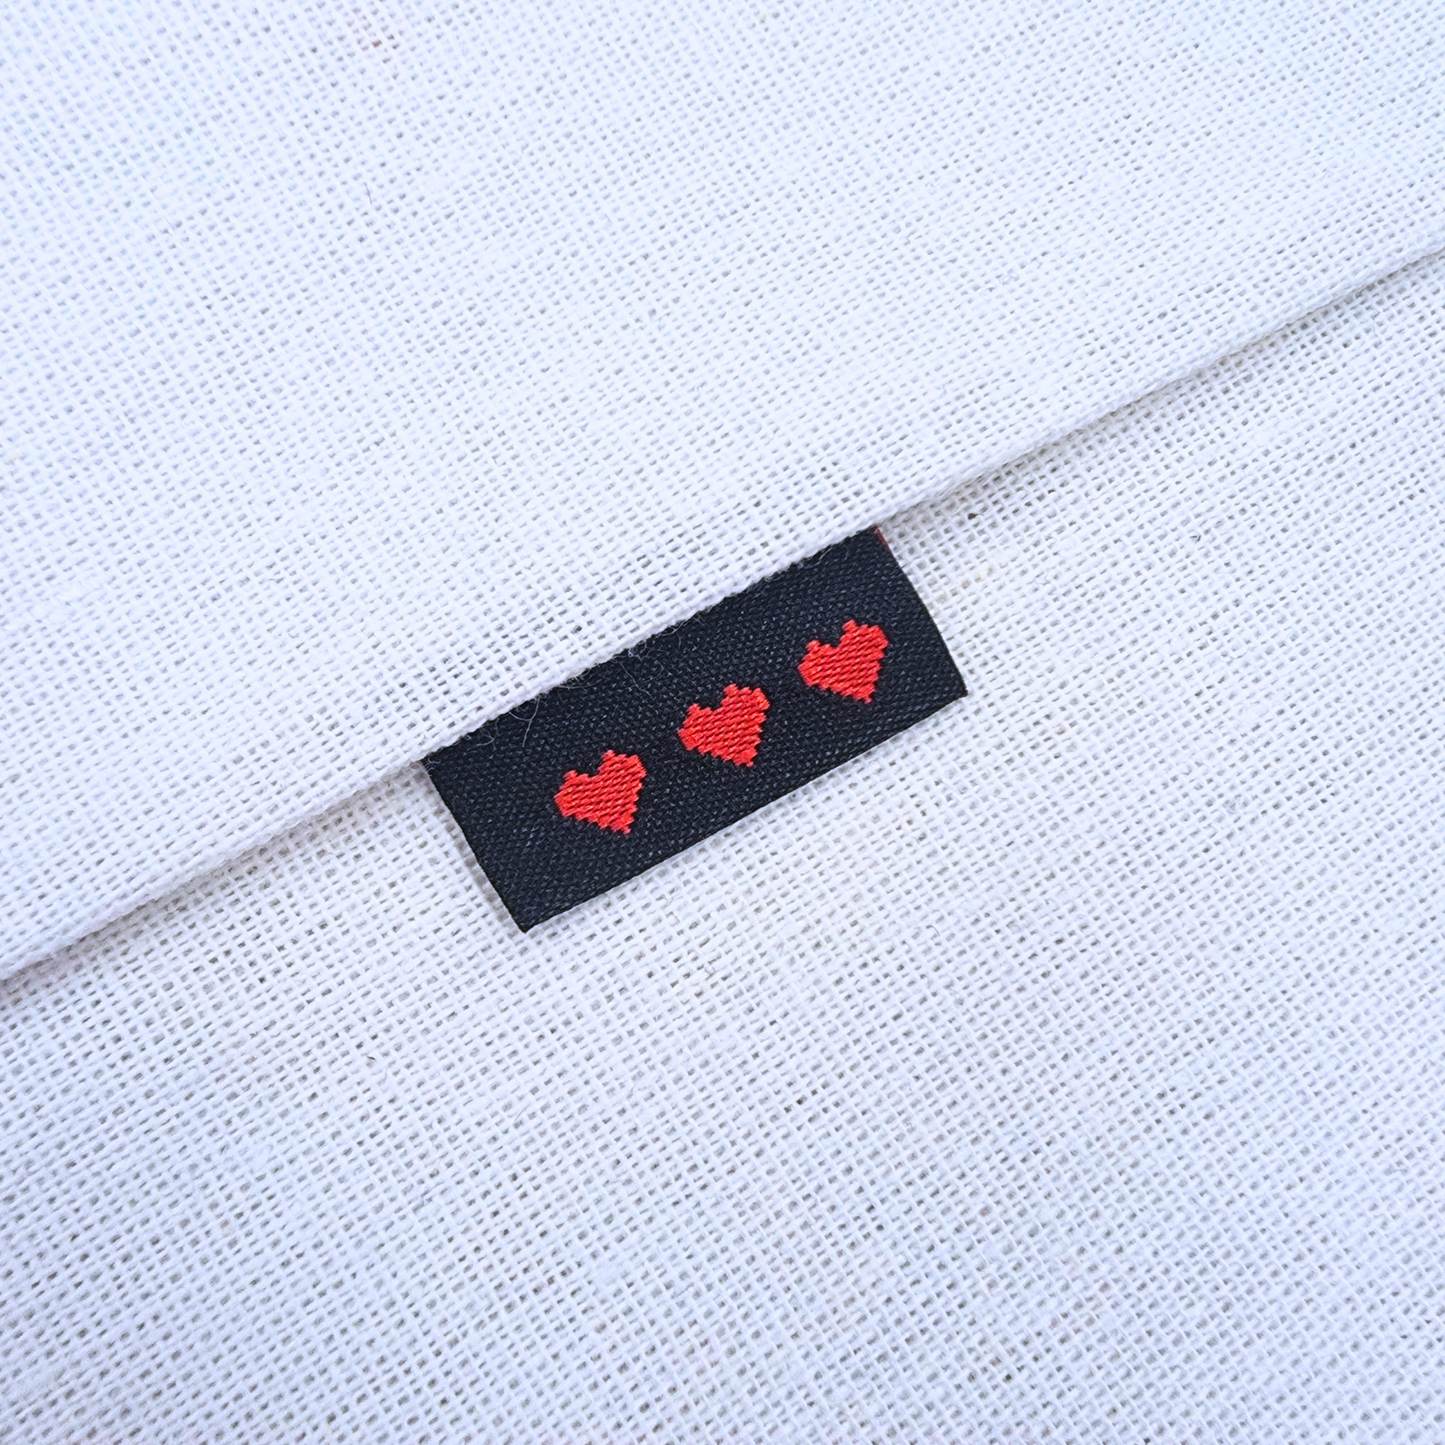 Pixel Heart | Woven Sew In Labels